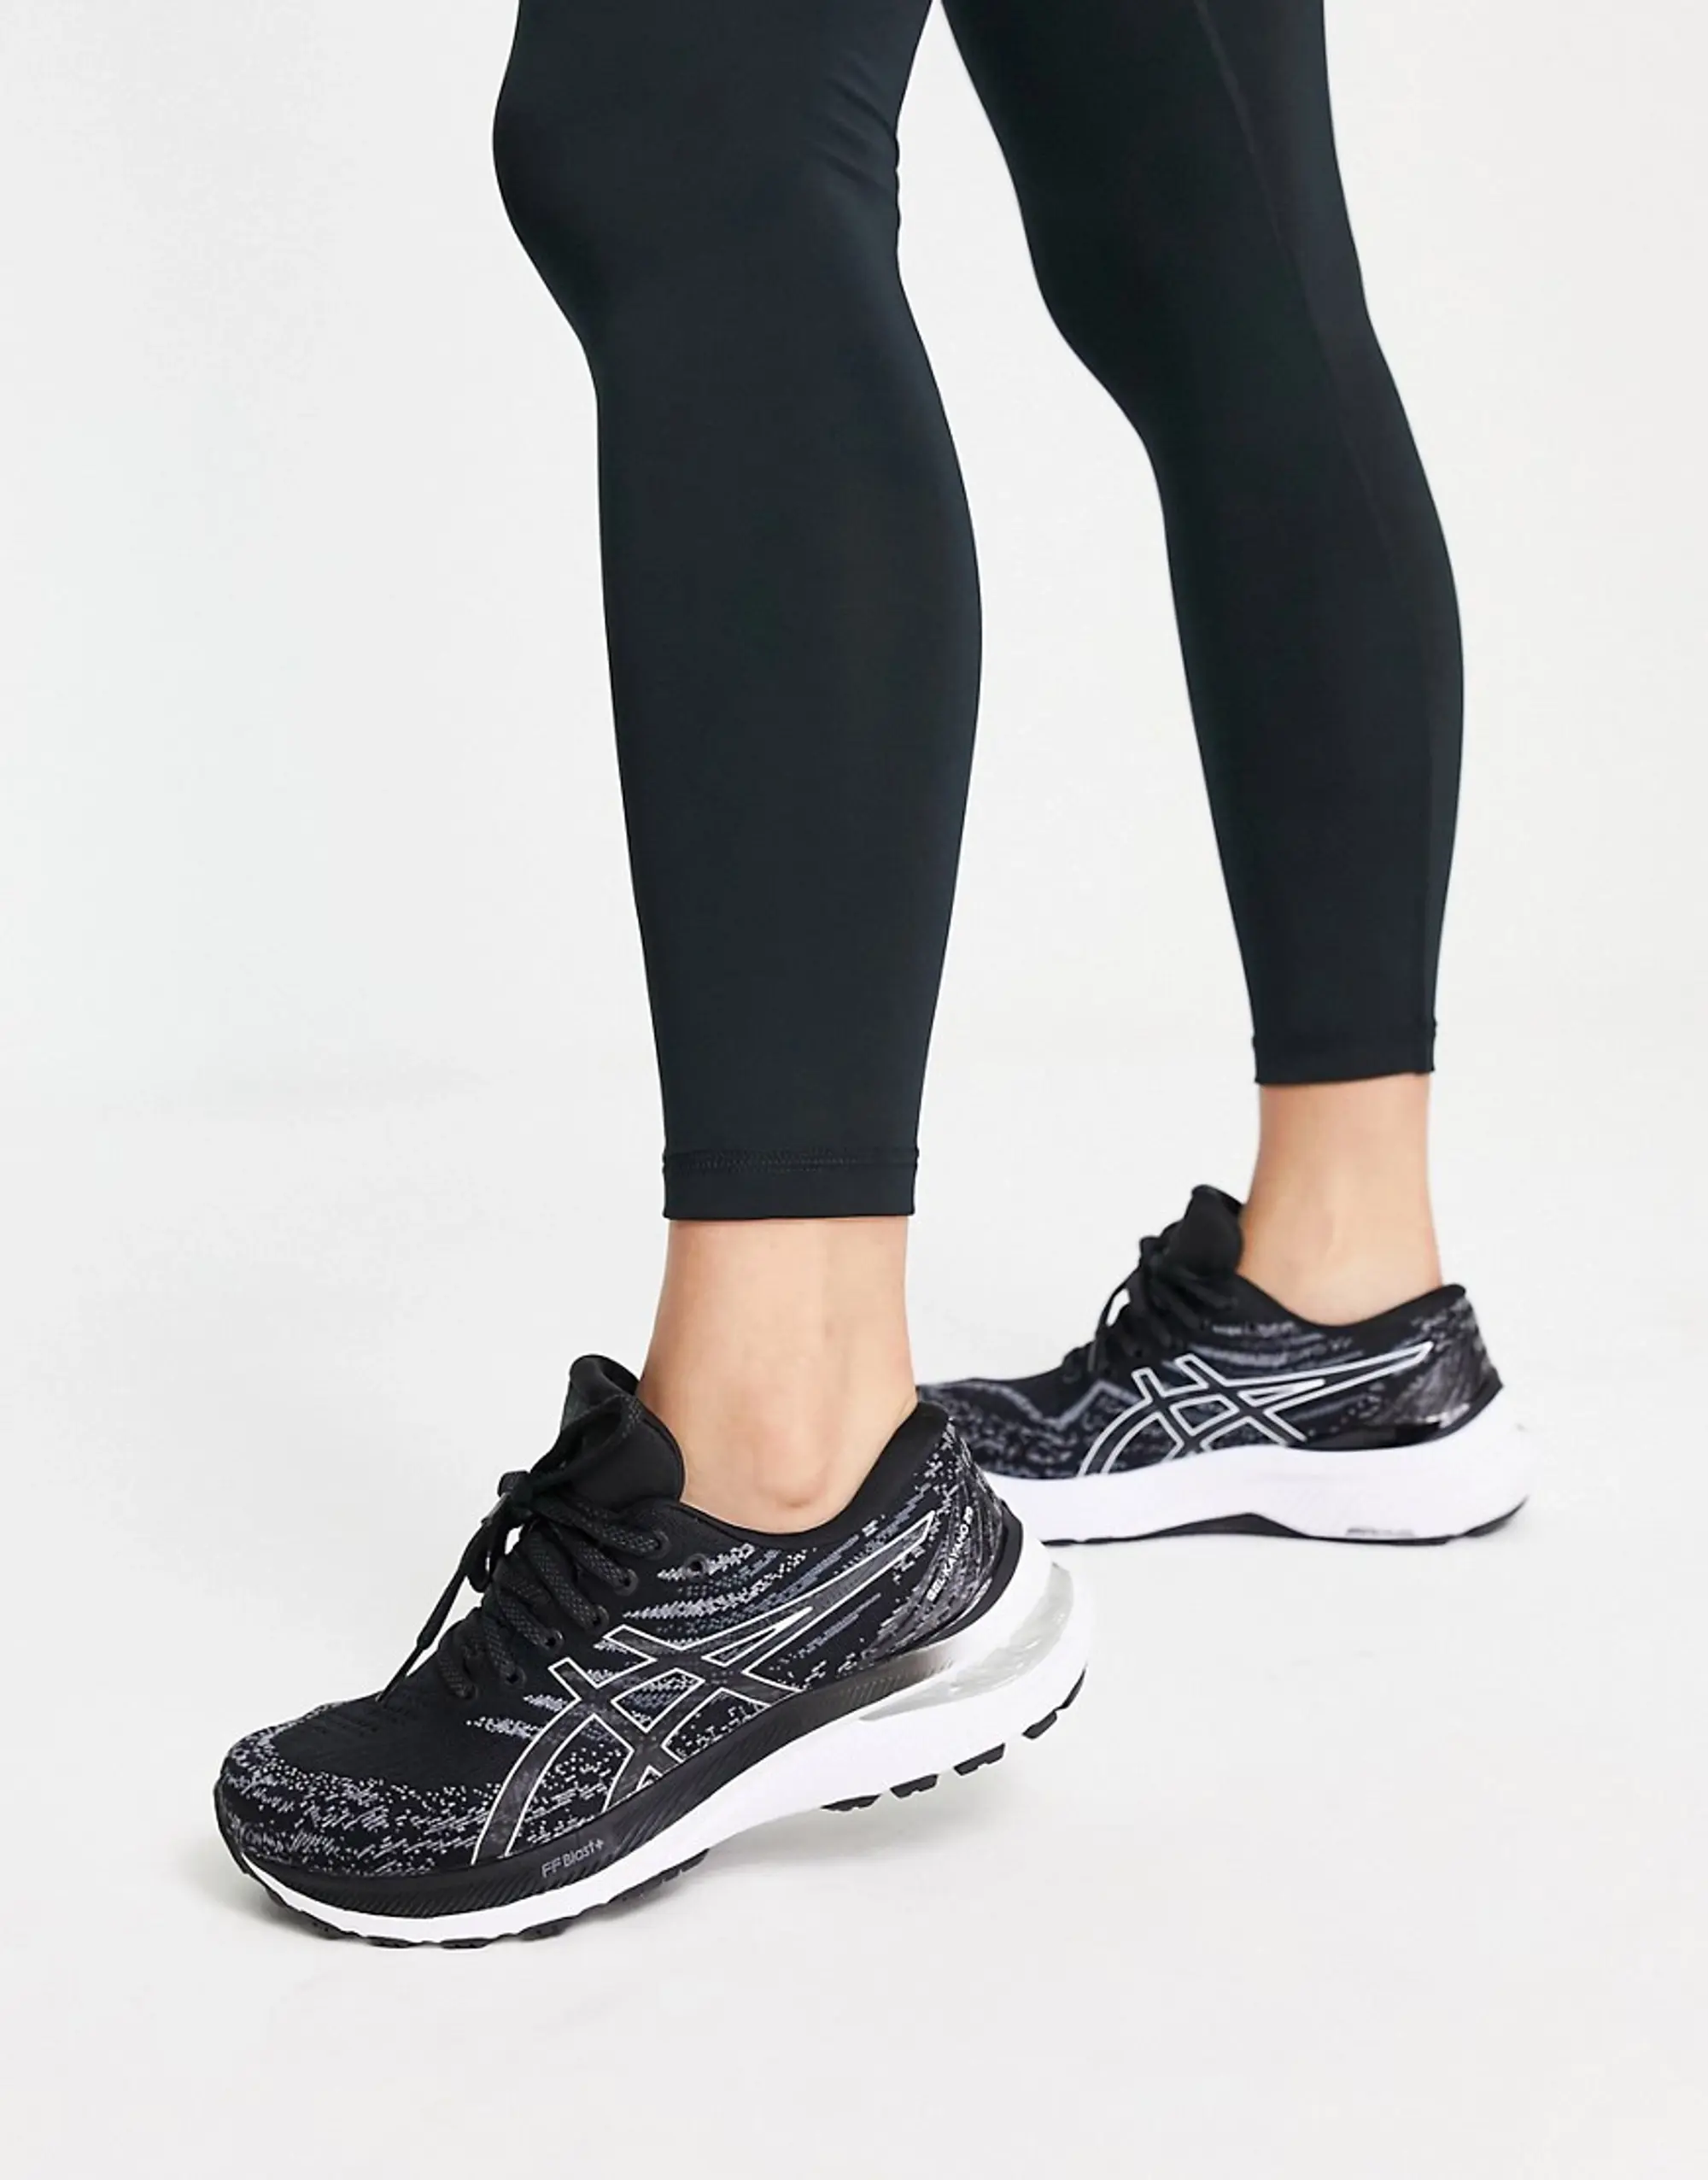 Asics GEL-Kayano 29 Women's Running Shoes - Black